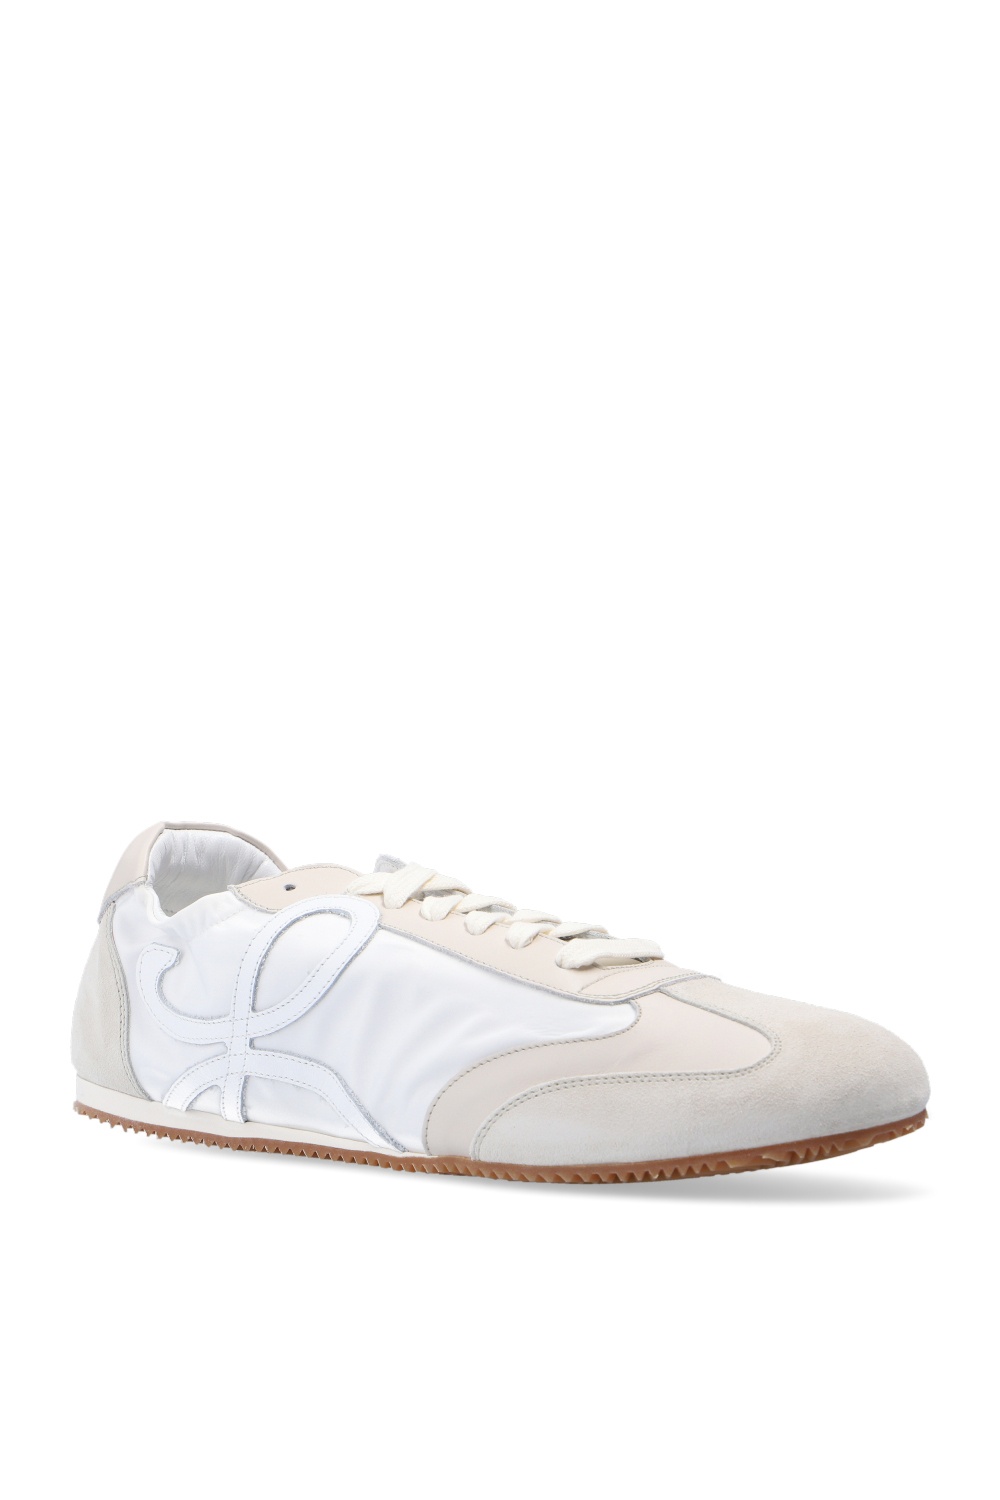 Loewe ‘Ballet Runner’ sneakers